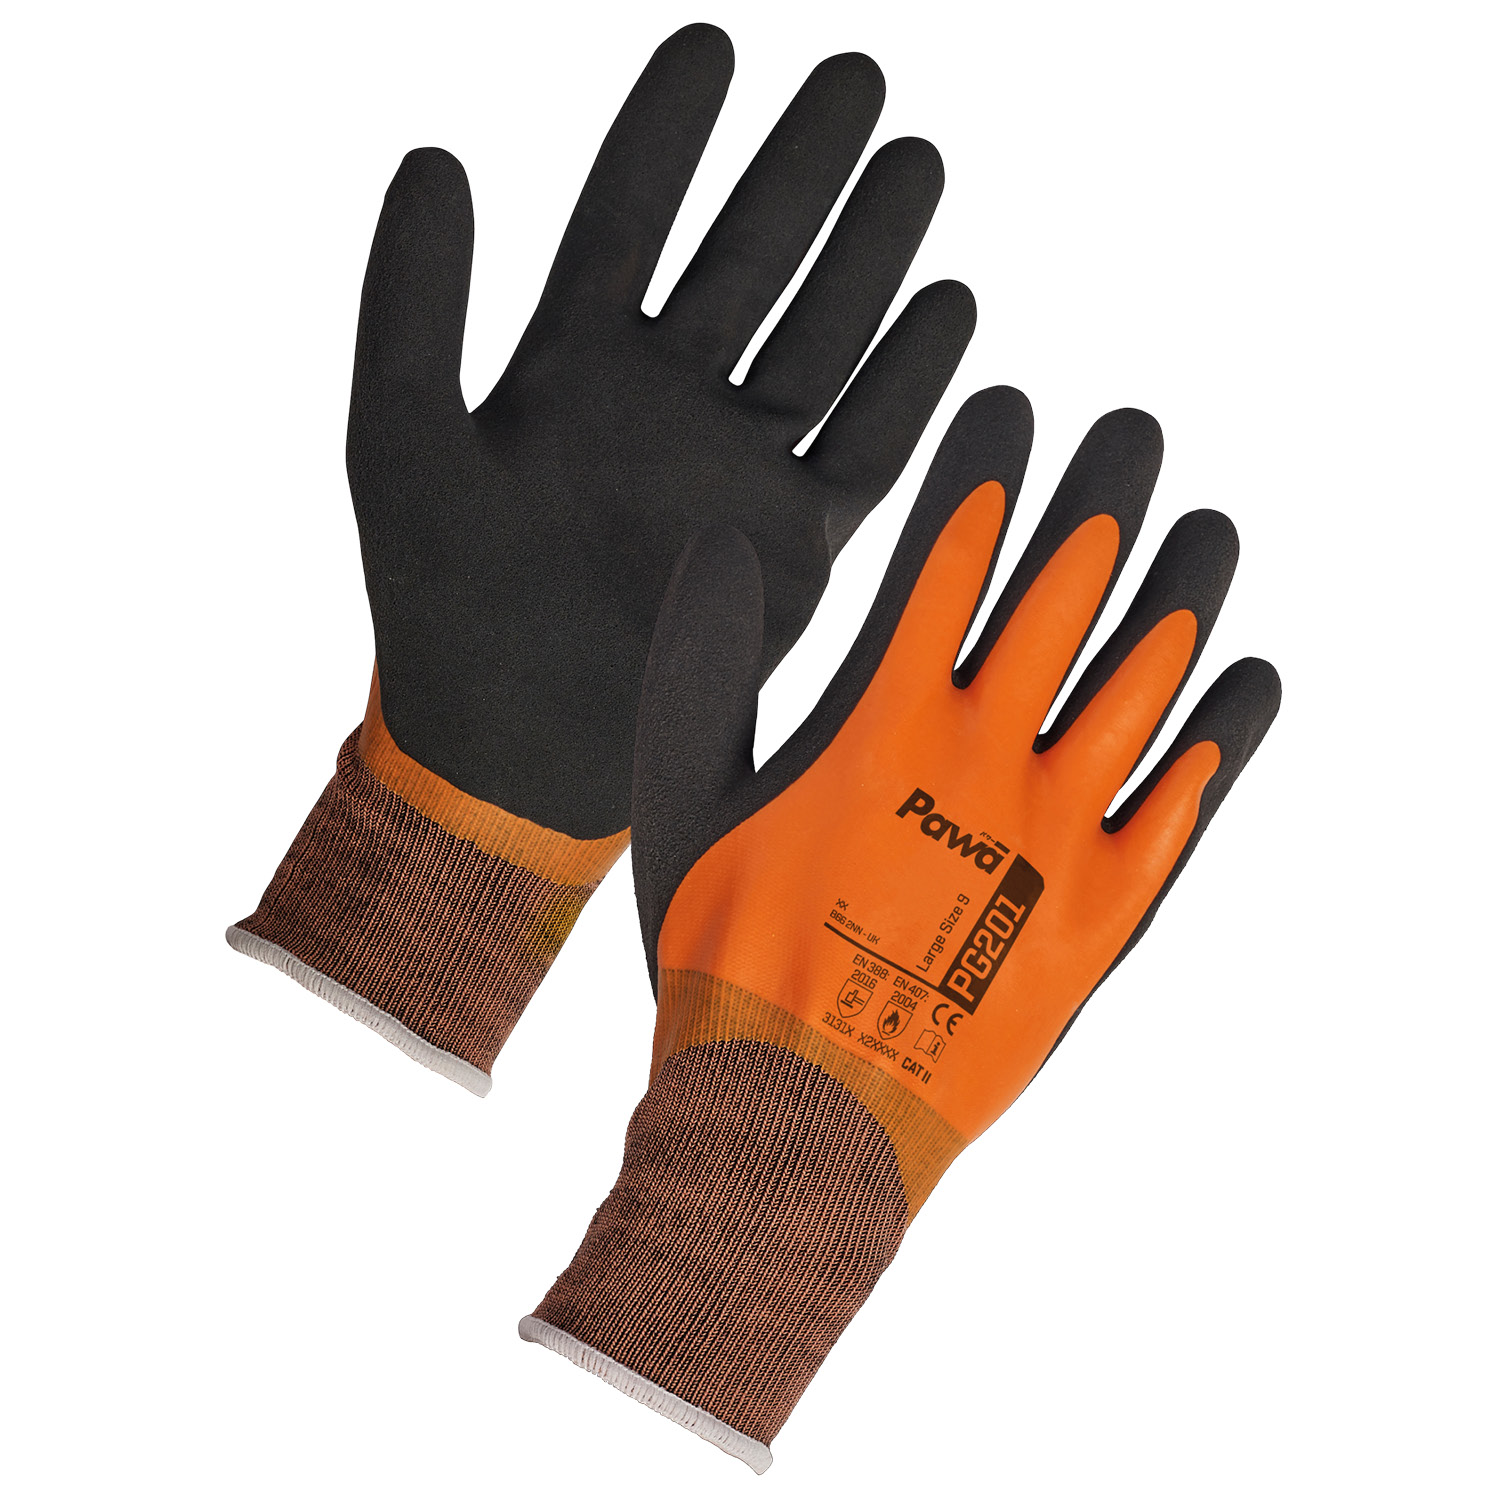 Pawa Gloves 201 - Large